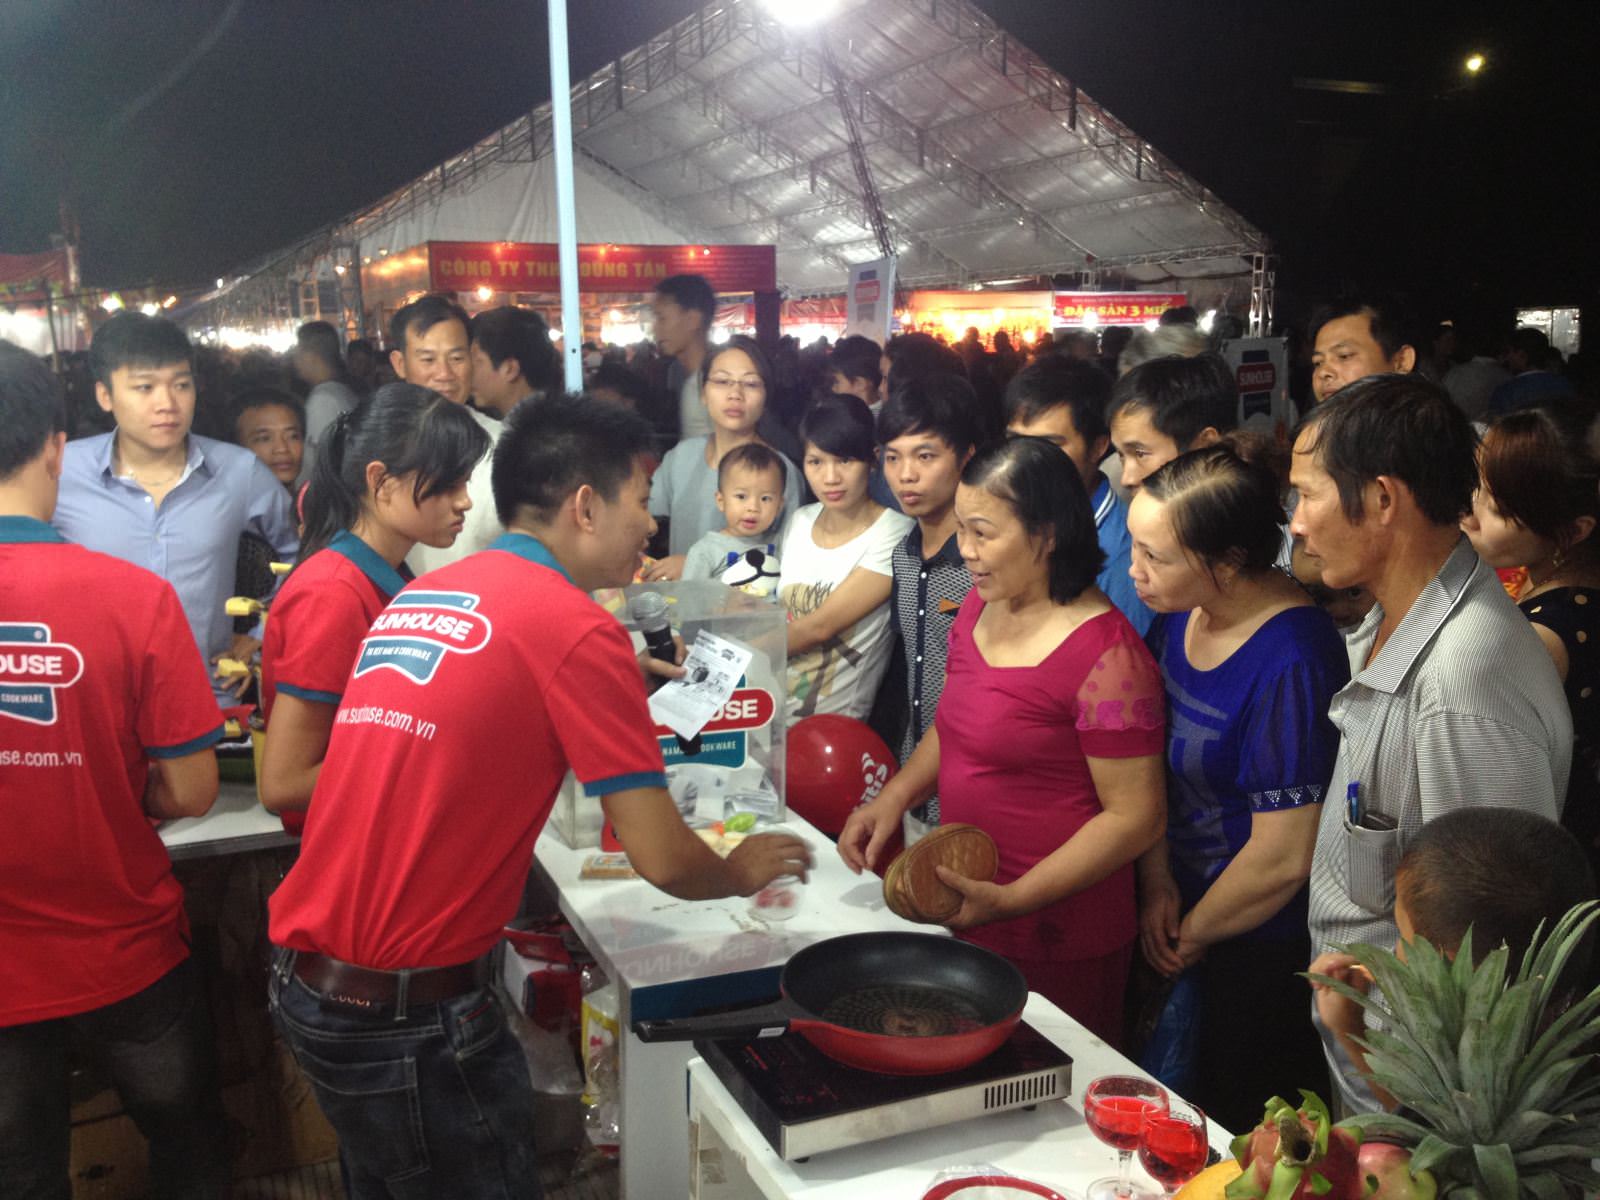 Tập đoàn Sunhouse tổ chức chương trình “Tri ân khách hàng” tại Hội chợ Hàng Việt khu vực Đông Bắc-Bắc Giang 2013 1